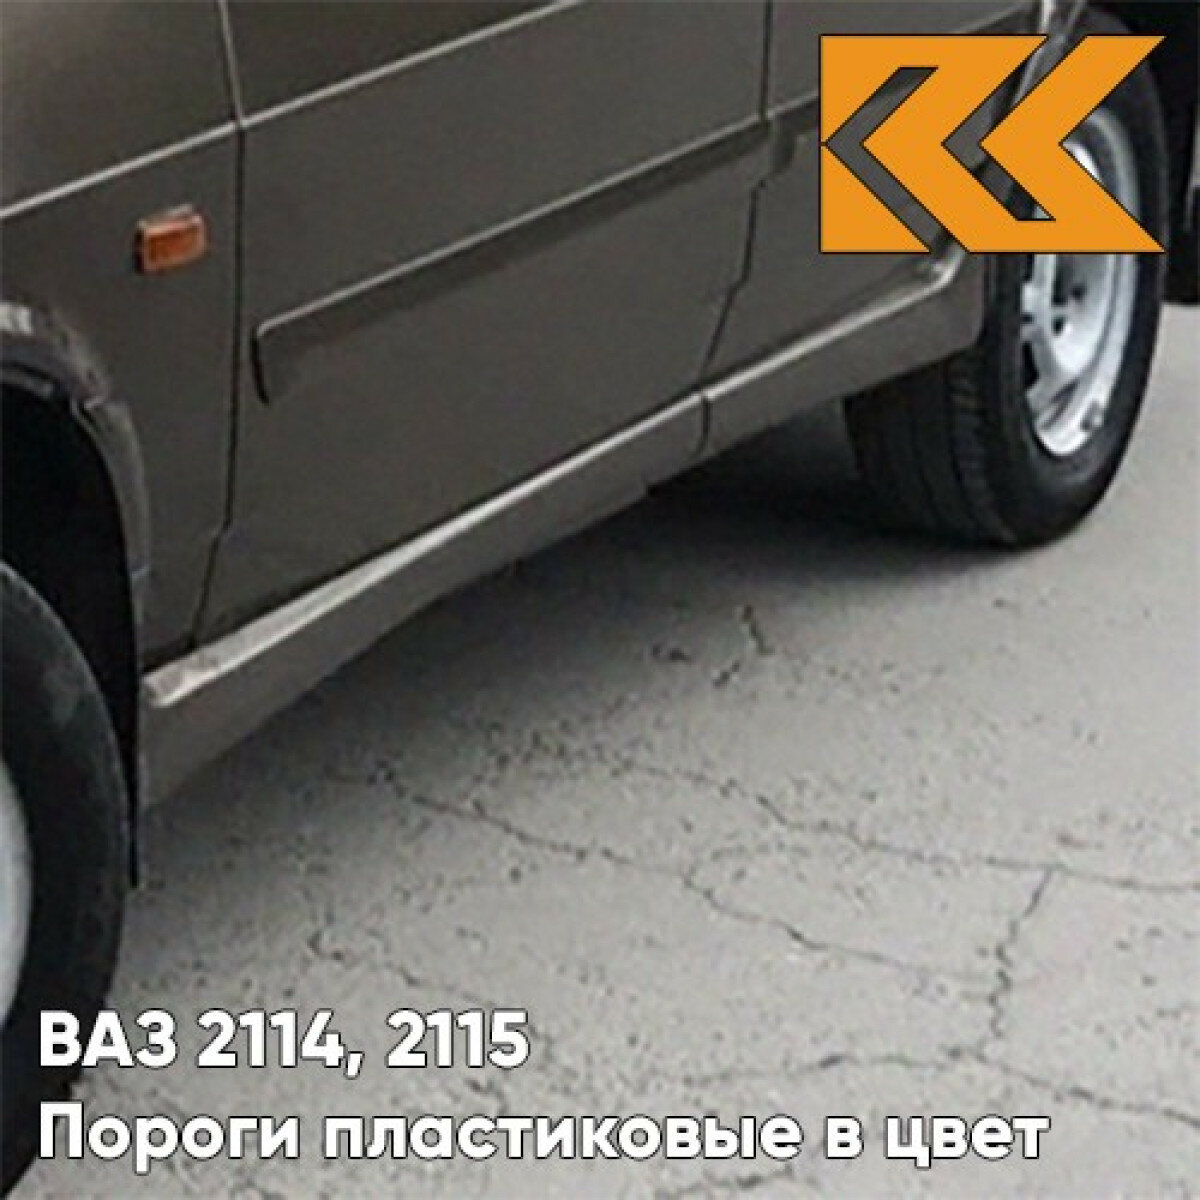 Пороги пластиковые в цвет кузова ВАЗ 2114 2115 283 - Кашемир - Темно-коричневый комплект (комплект 4 )